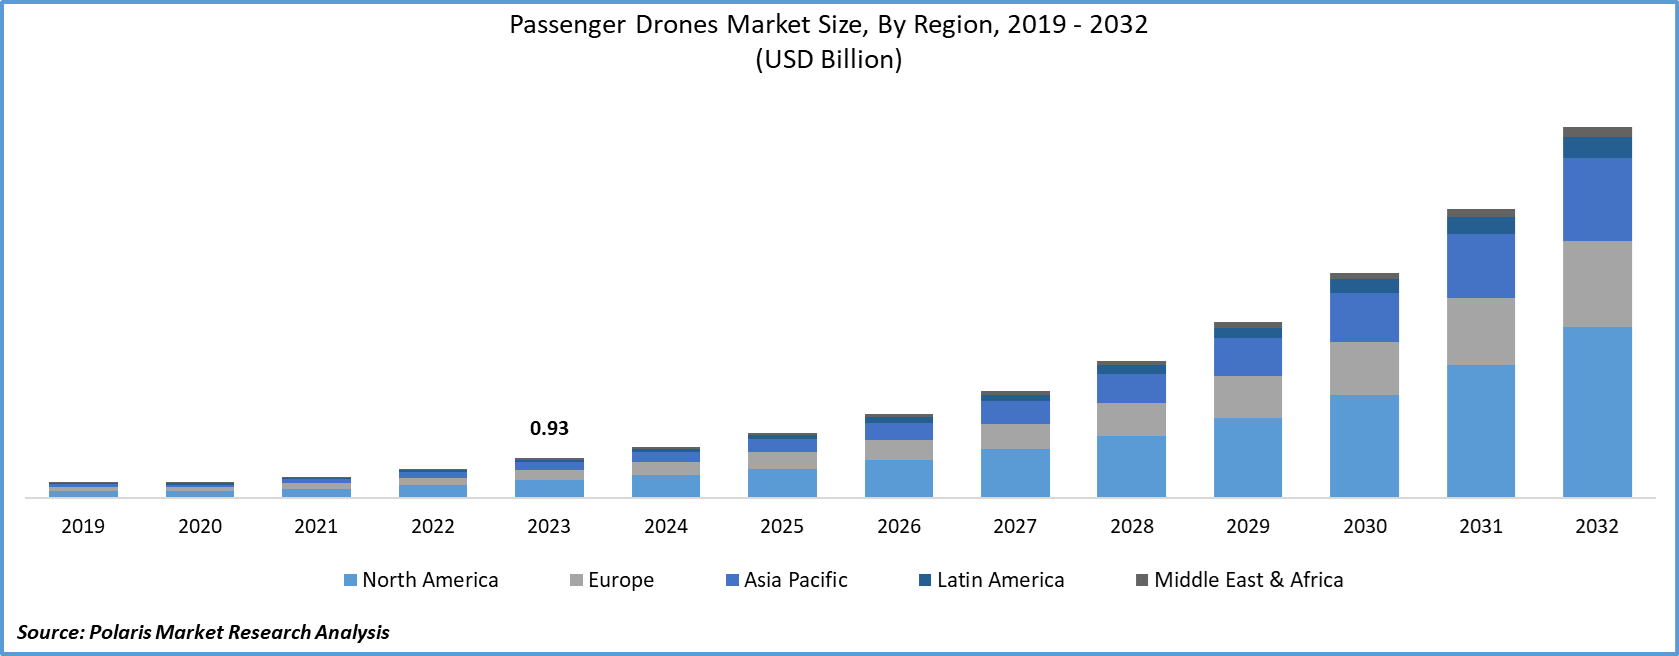 Passenger Drones Market Size